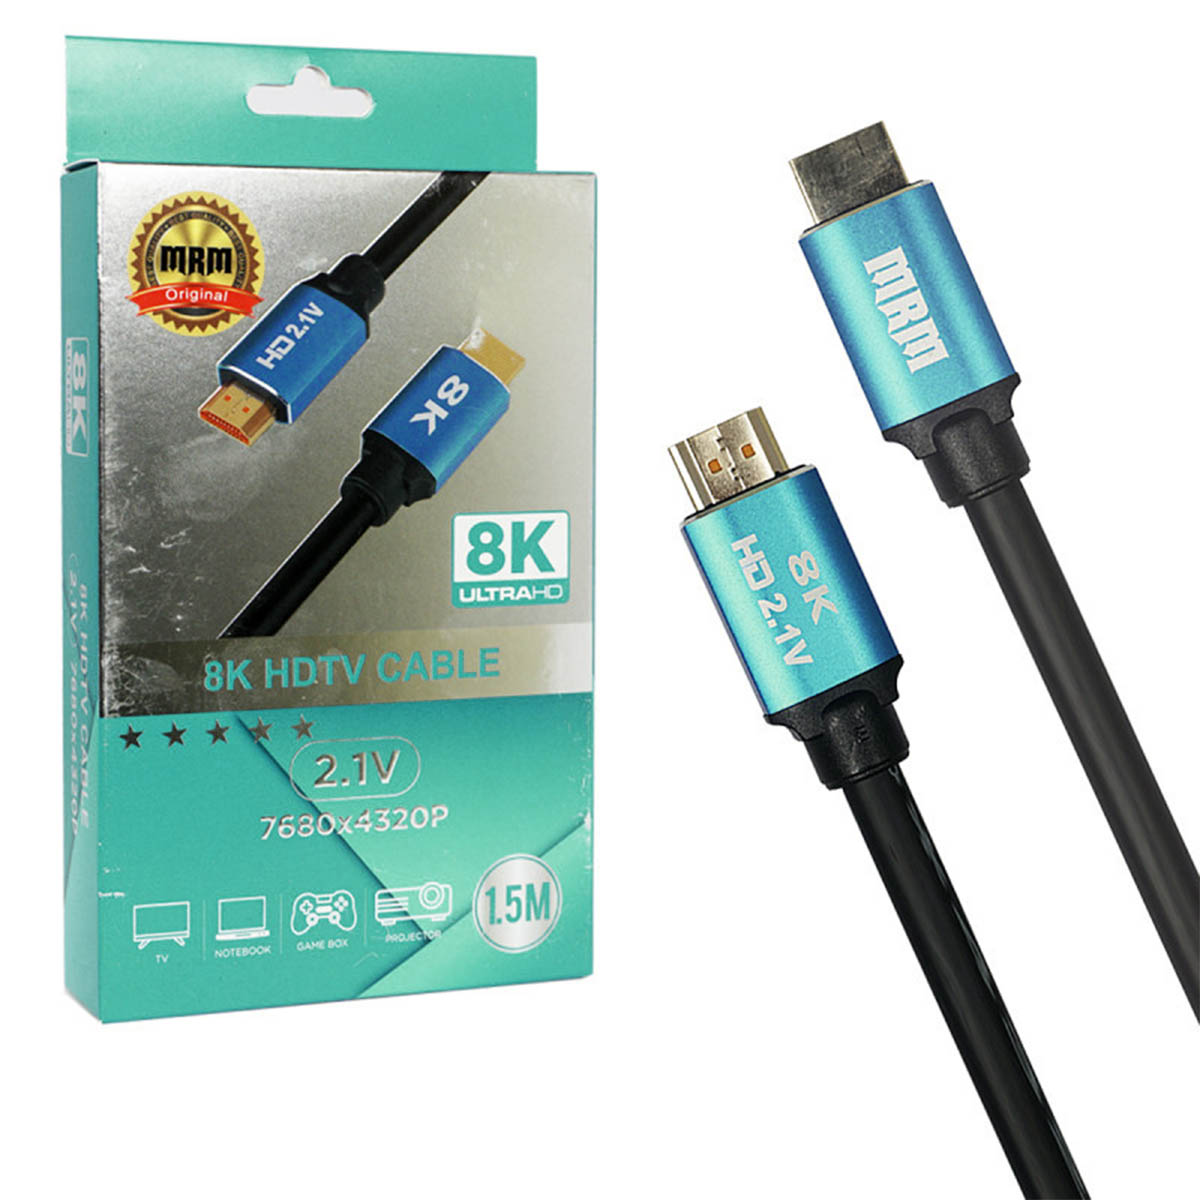 Цифровой кабель HDMI, для подключения ПК, Apple TV, монитора, игровых приставок, 8K Ultra HD, длина 1.5 метра, цвет черный